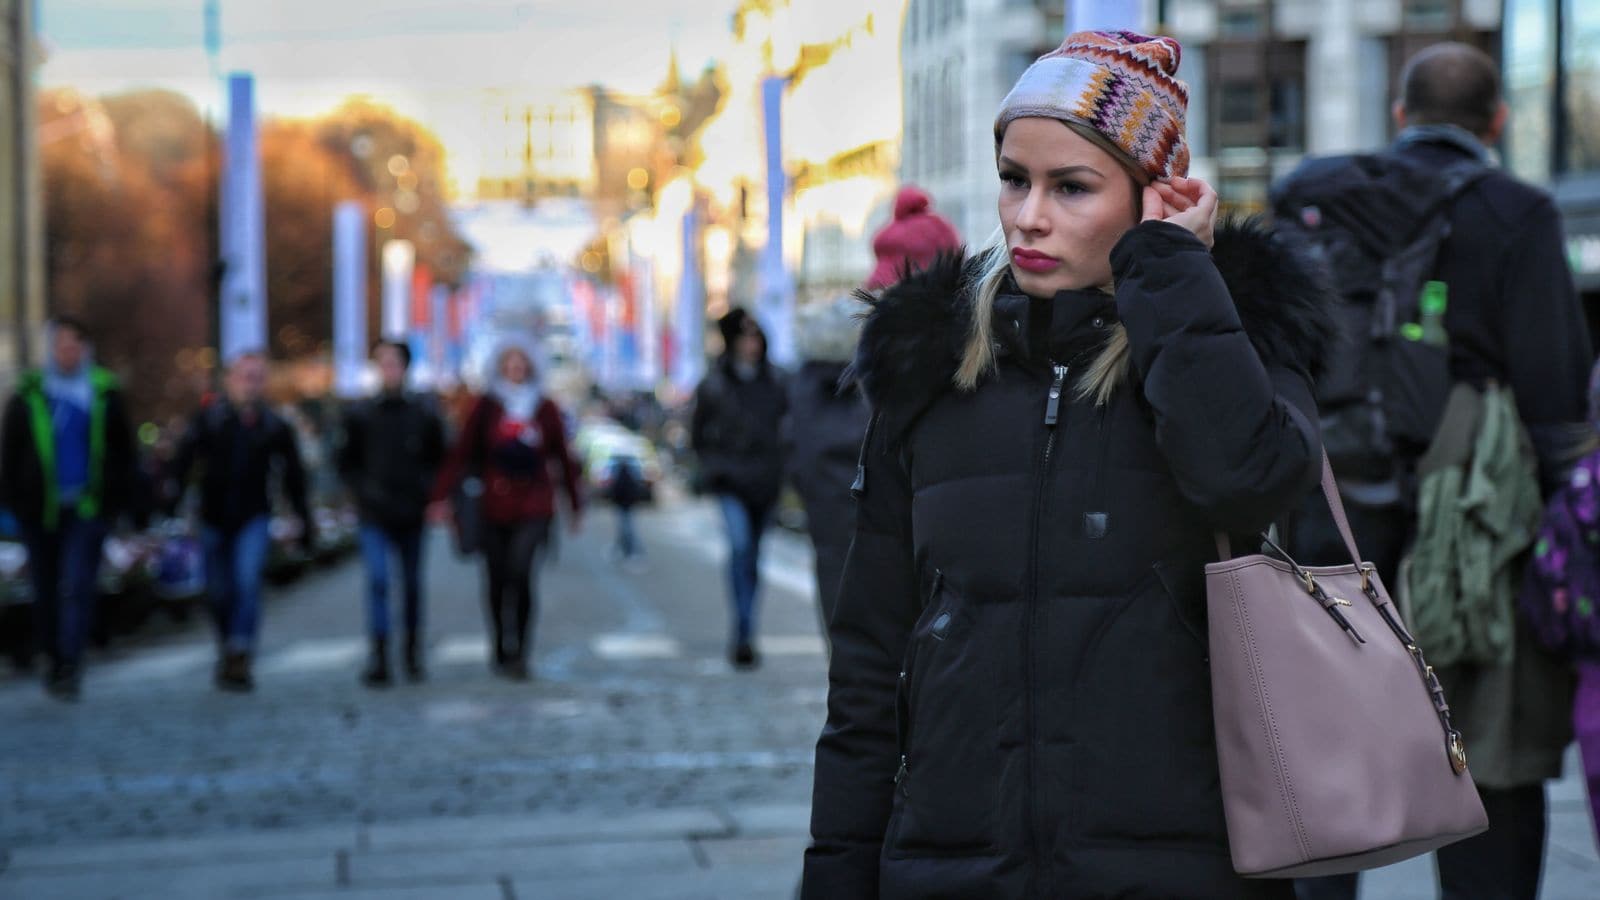 Ung kvinne på Karl Johans gate i Oslo hvor slottet skimtes i bakgrunnen. Hun har vinterklær på seg - topptue og jakke med pelskrage og ser litt ettertenksom ut.